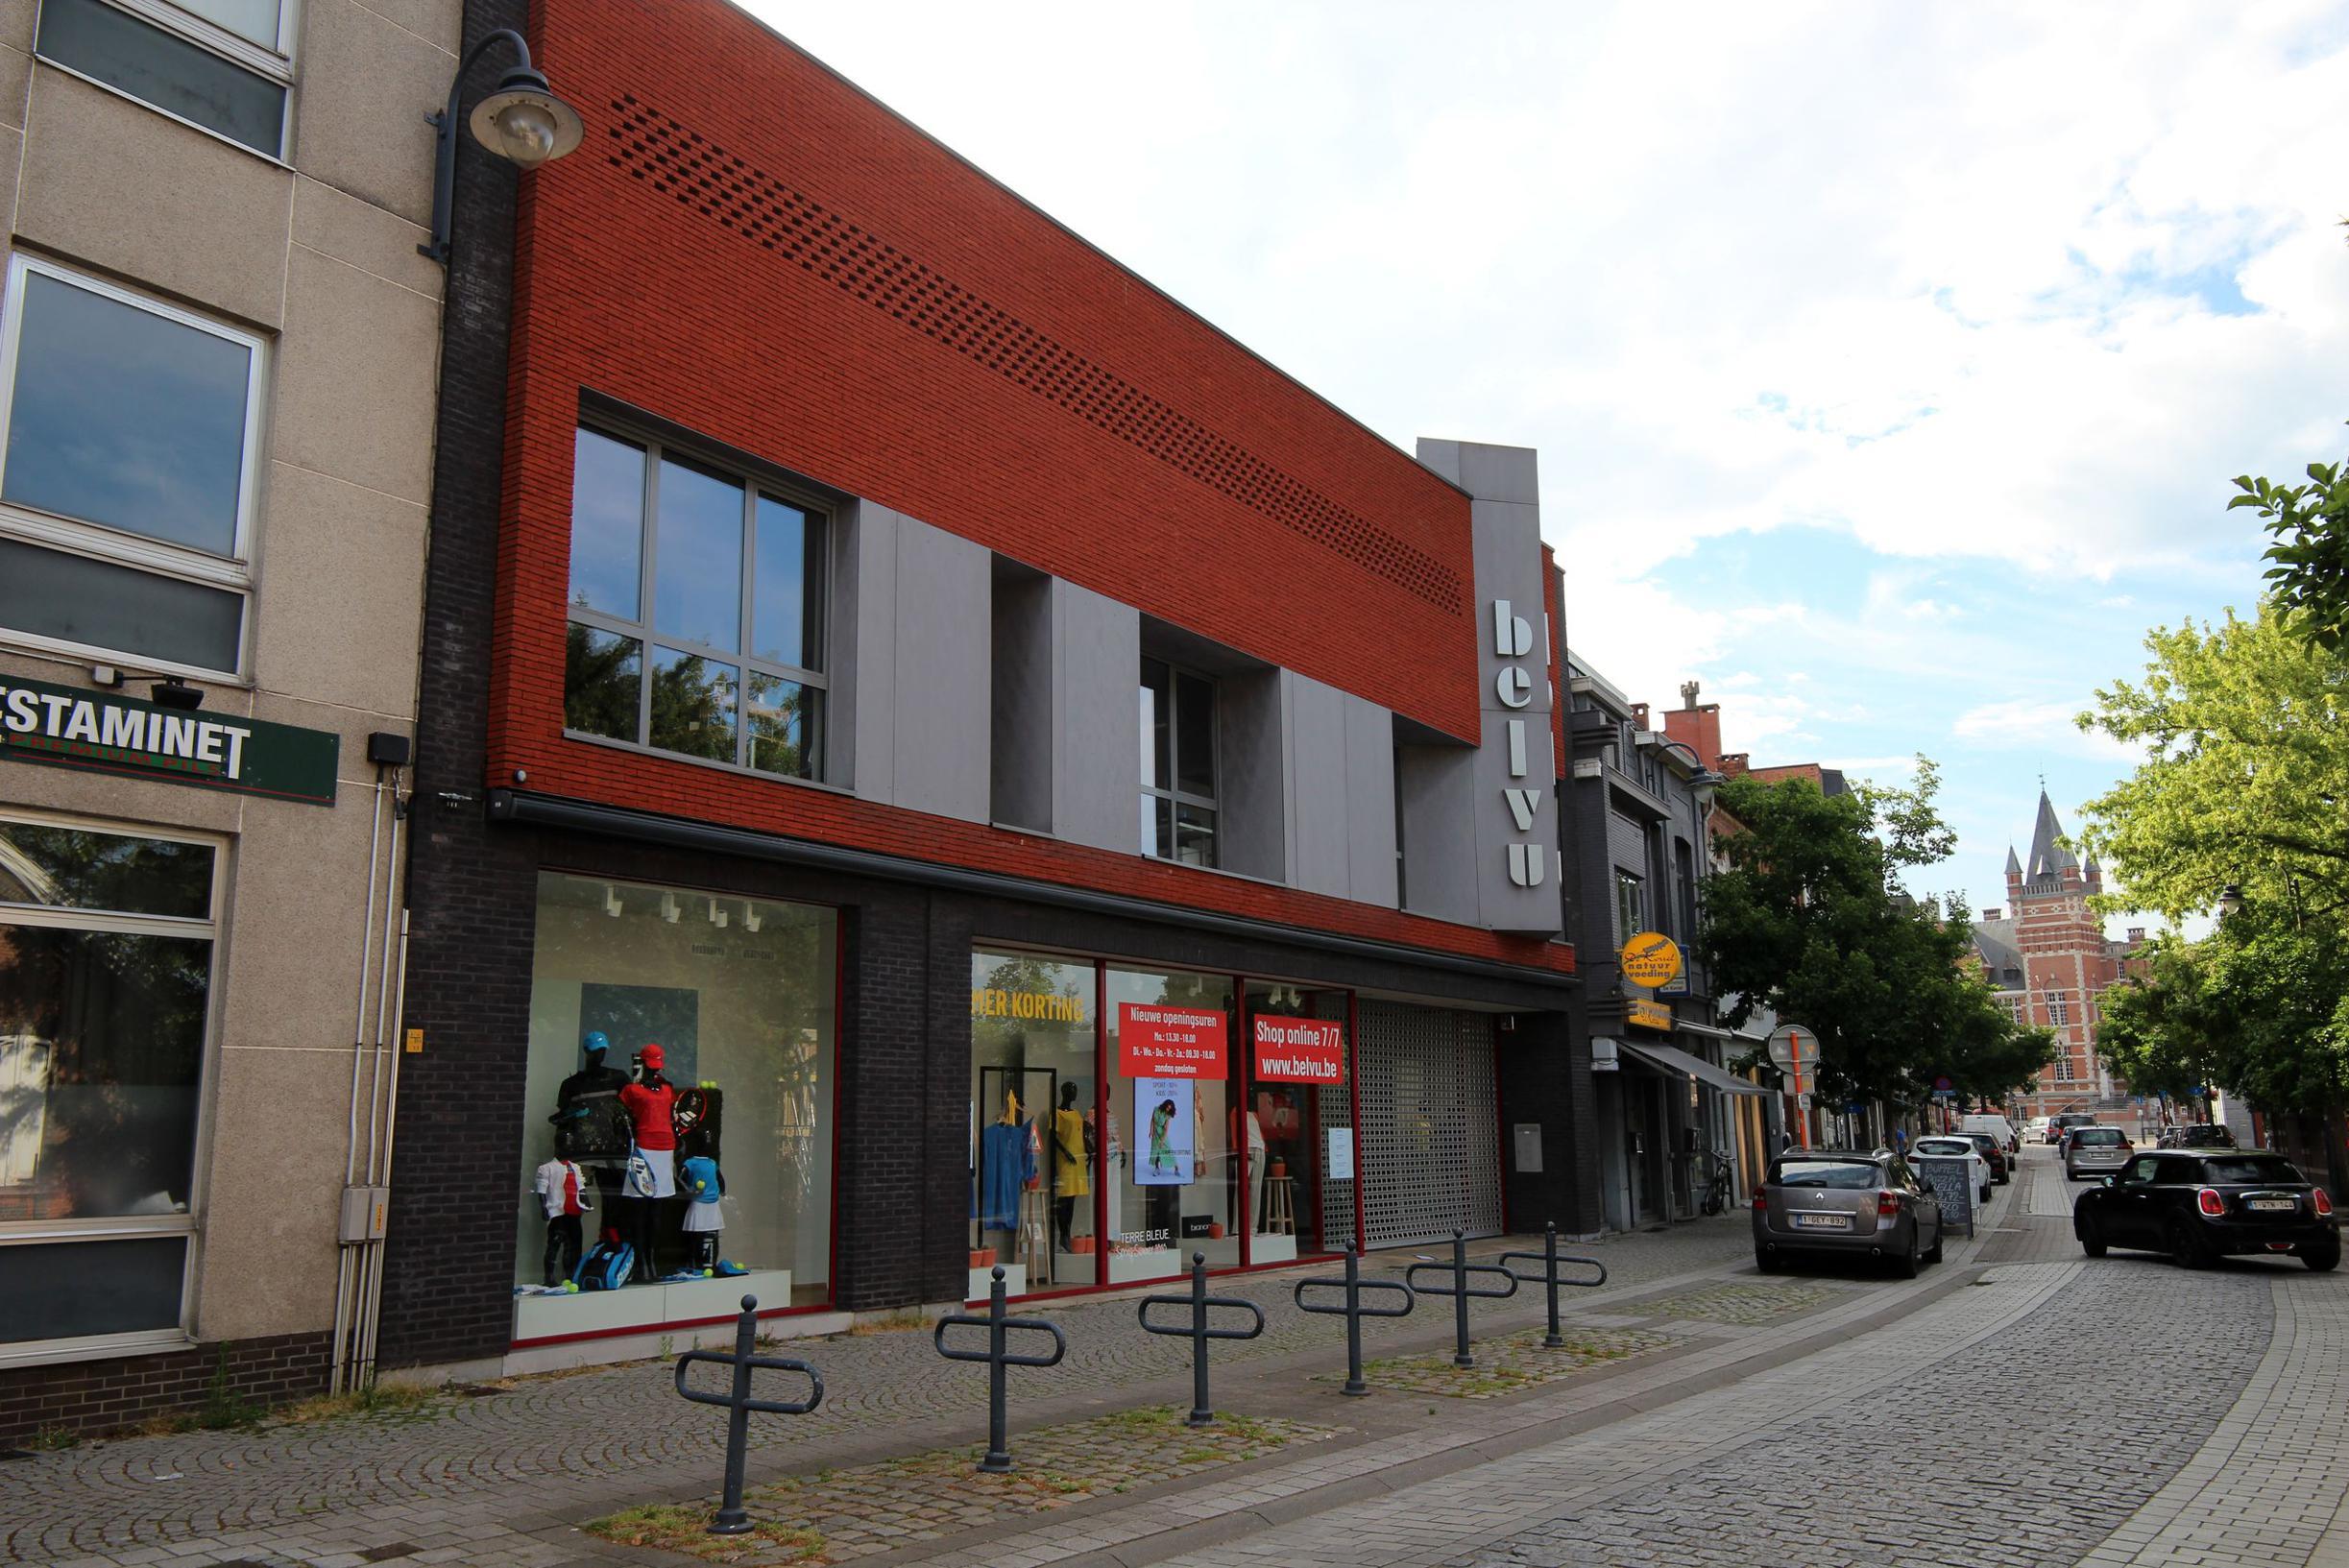 Site van voormalige mode- en sportwinkel Belvu wordt omgevormd tot meerdere winkels en appartementen